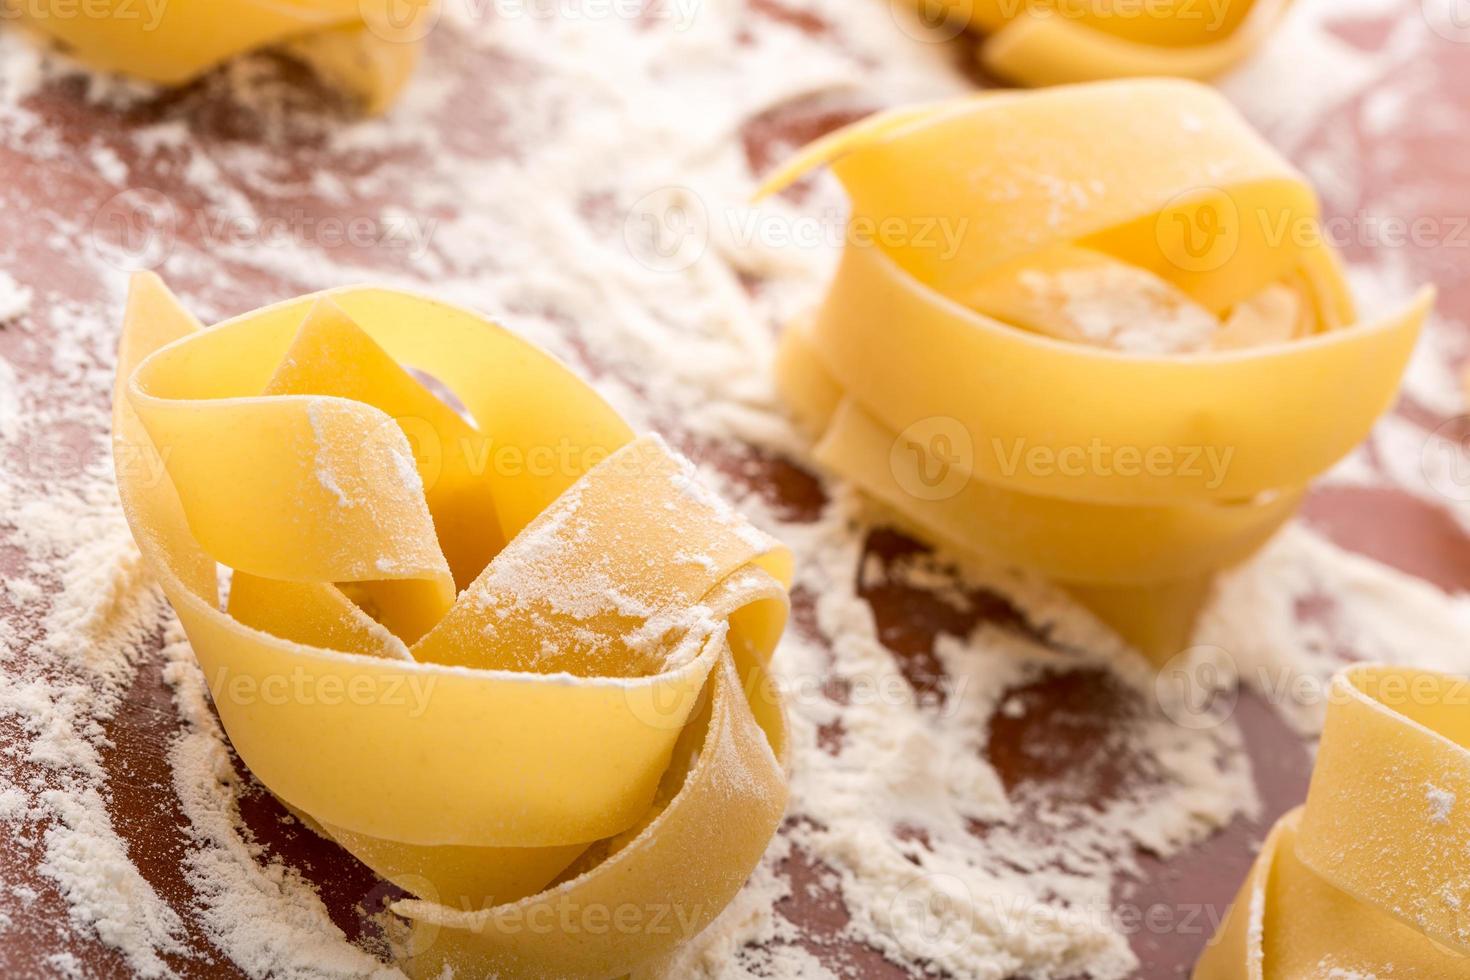 Homemade pasta photo